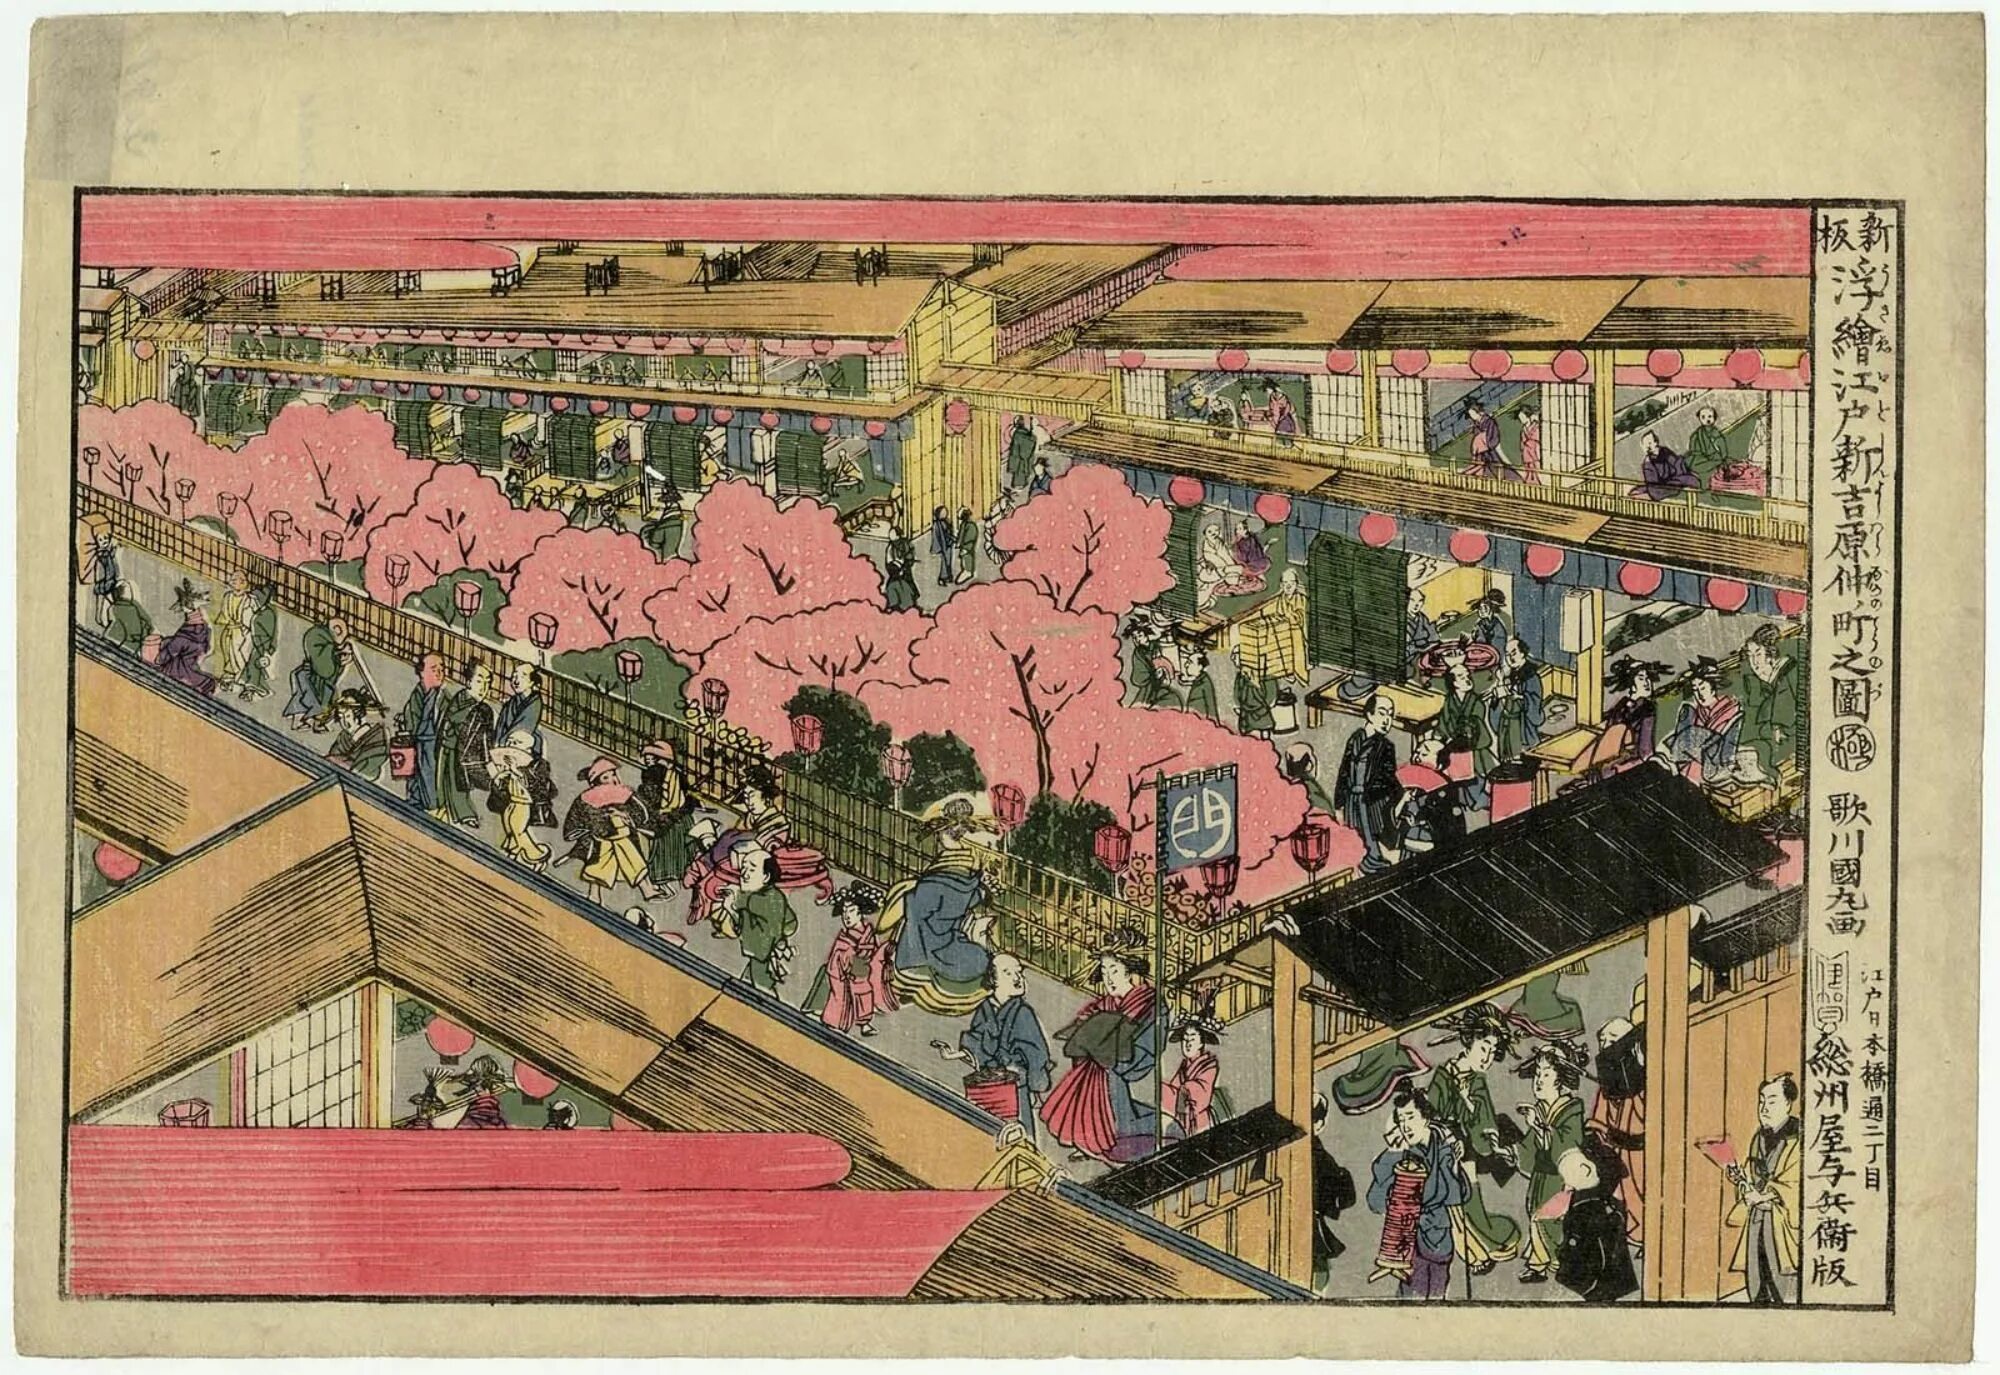 Япония 8 века. Япония 18 век эпоха Эдо. Япония квартал Есивара. Период Эдо в Японии в 18 веке. Период Эдо в Японии.